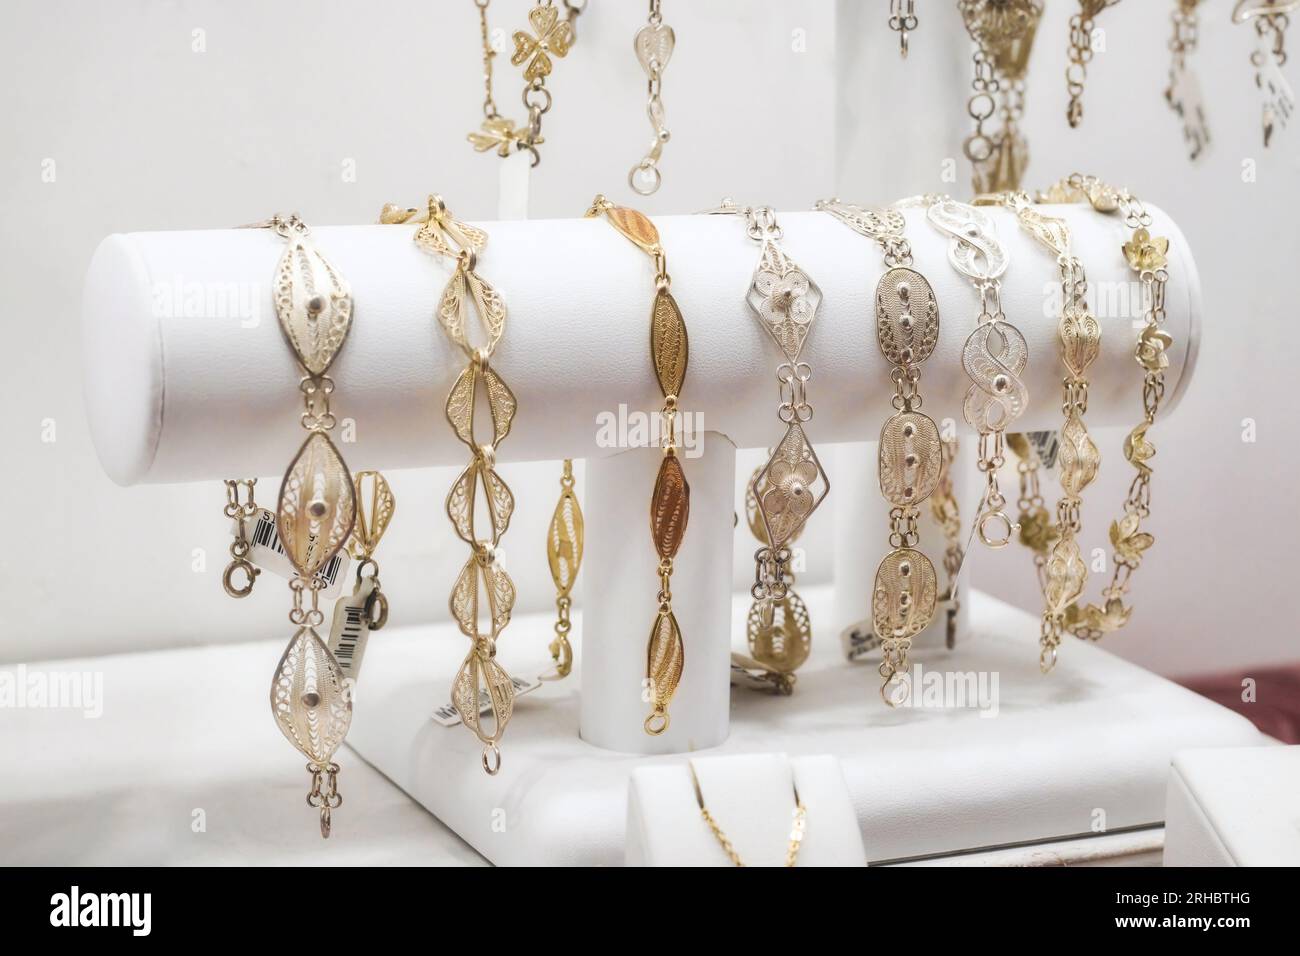 Une collection de bracelets pour femmes en filigrane d'or et d'argent exposée dans un magasin de bijouterie Banque D'Images